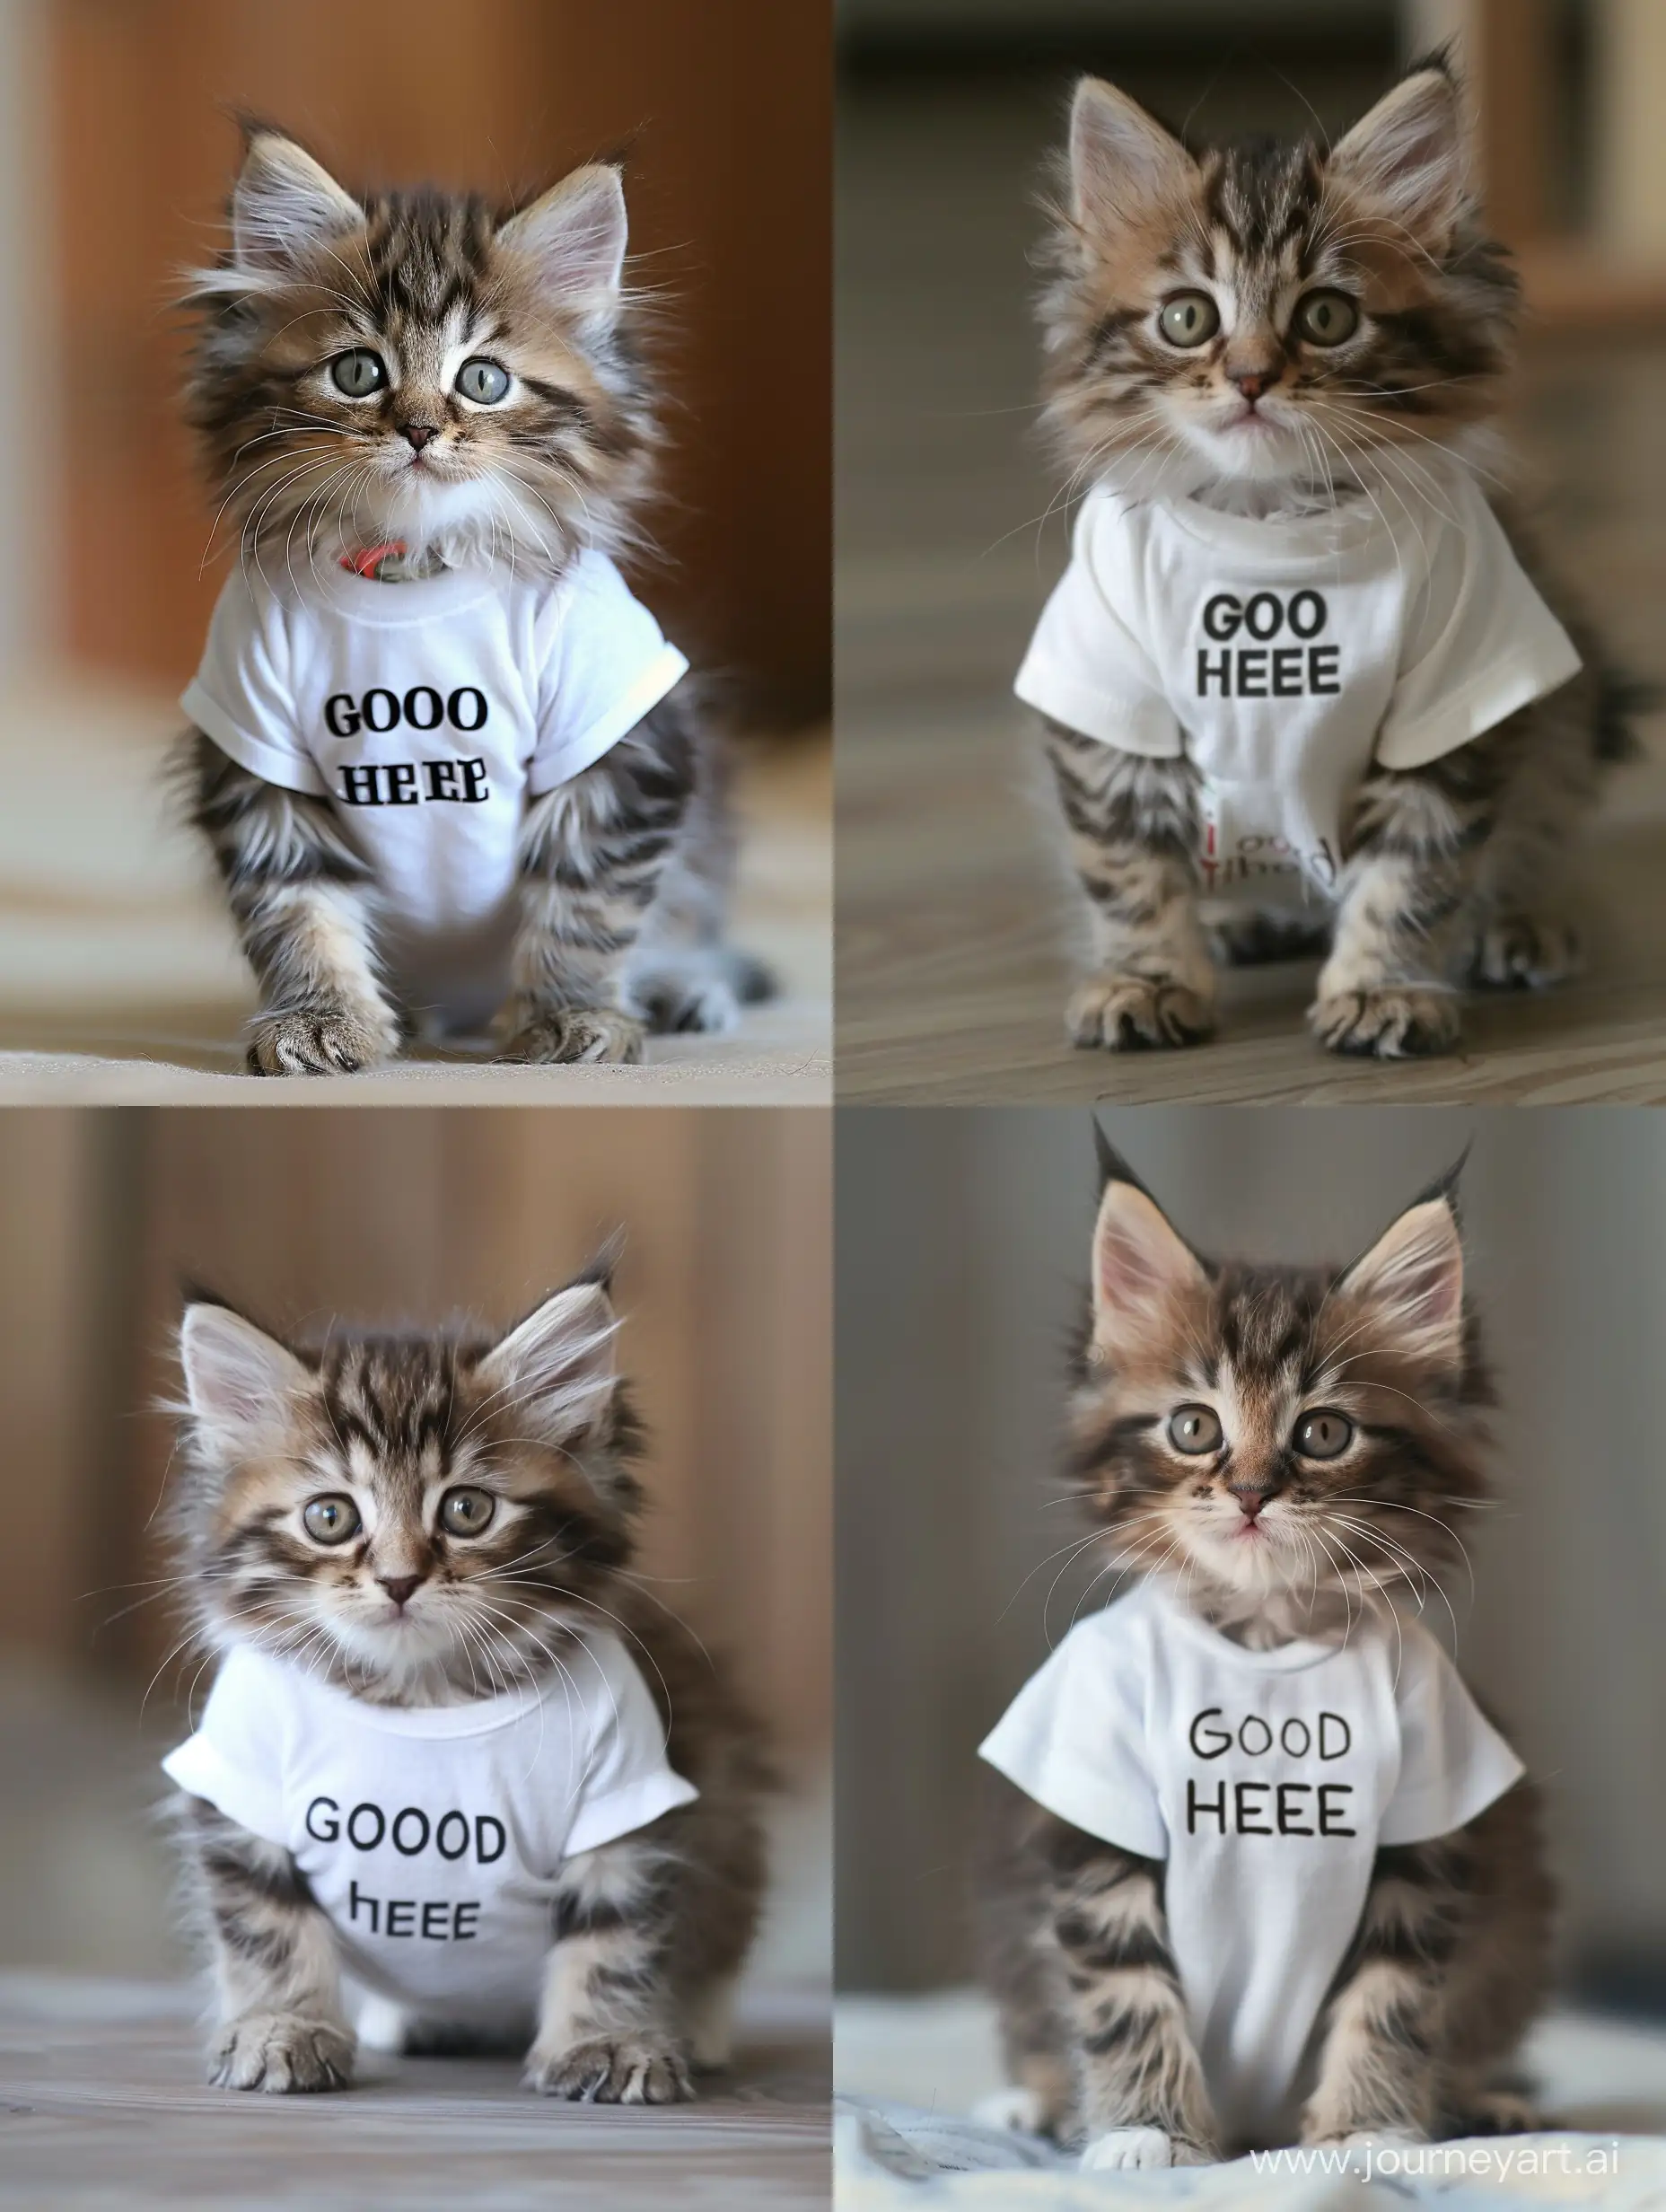 котенок в белой футболке с надписью спереди "добро здесь"